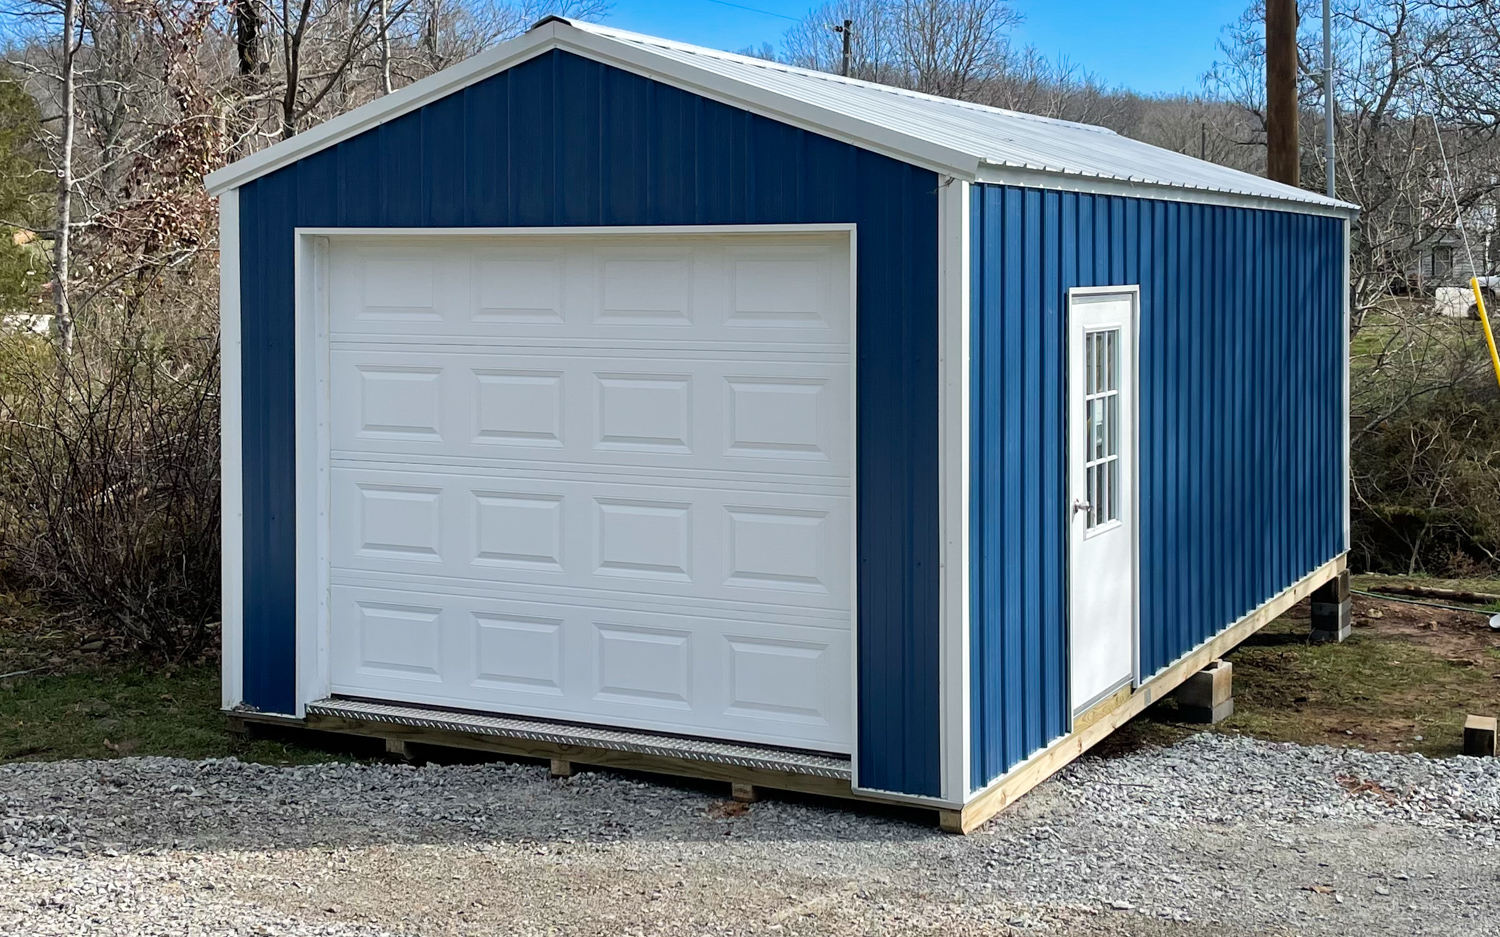 crestwood storage barns portable garage storage sheds in fayetteville arkansas